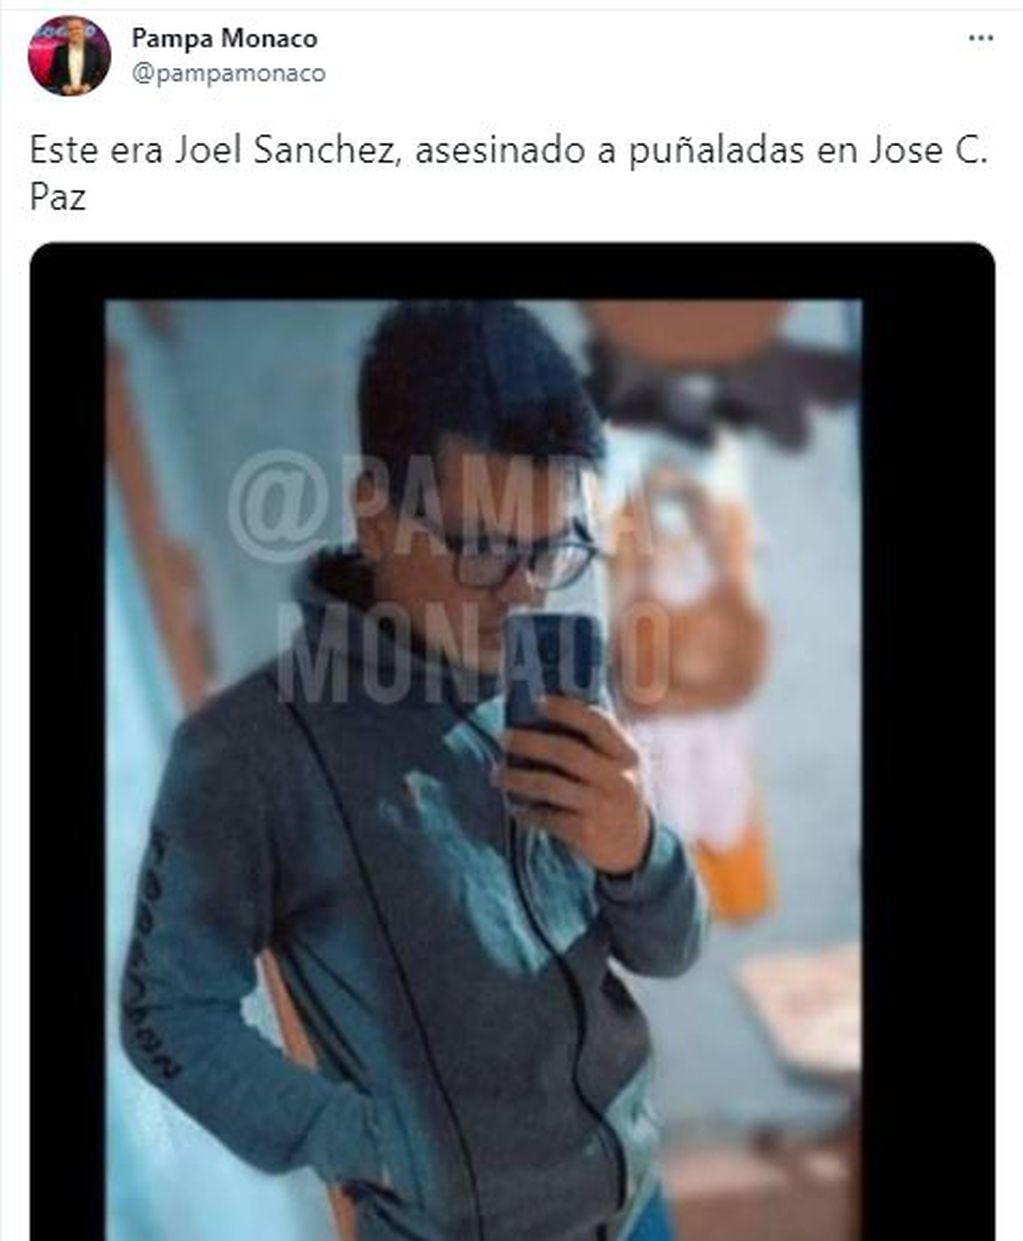 Joel Sánchez, el adolescente de 17 años asesinado a puñaladas en una panadería de José C. Paz.